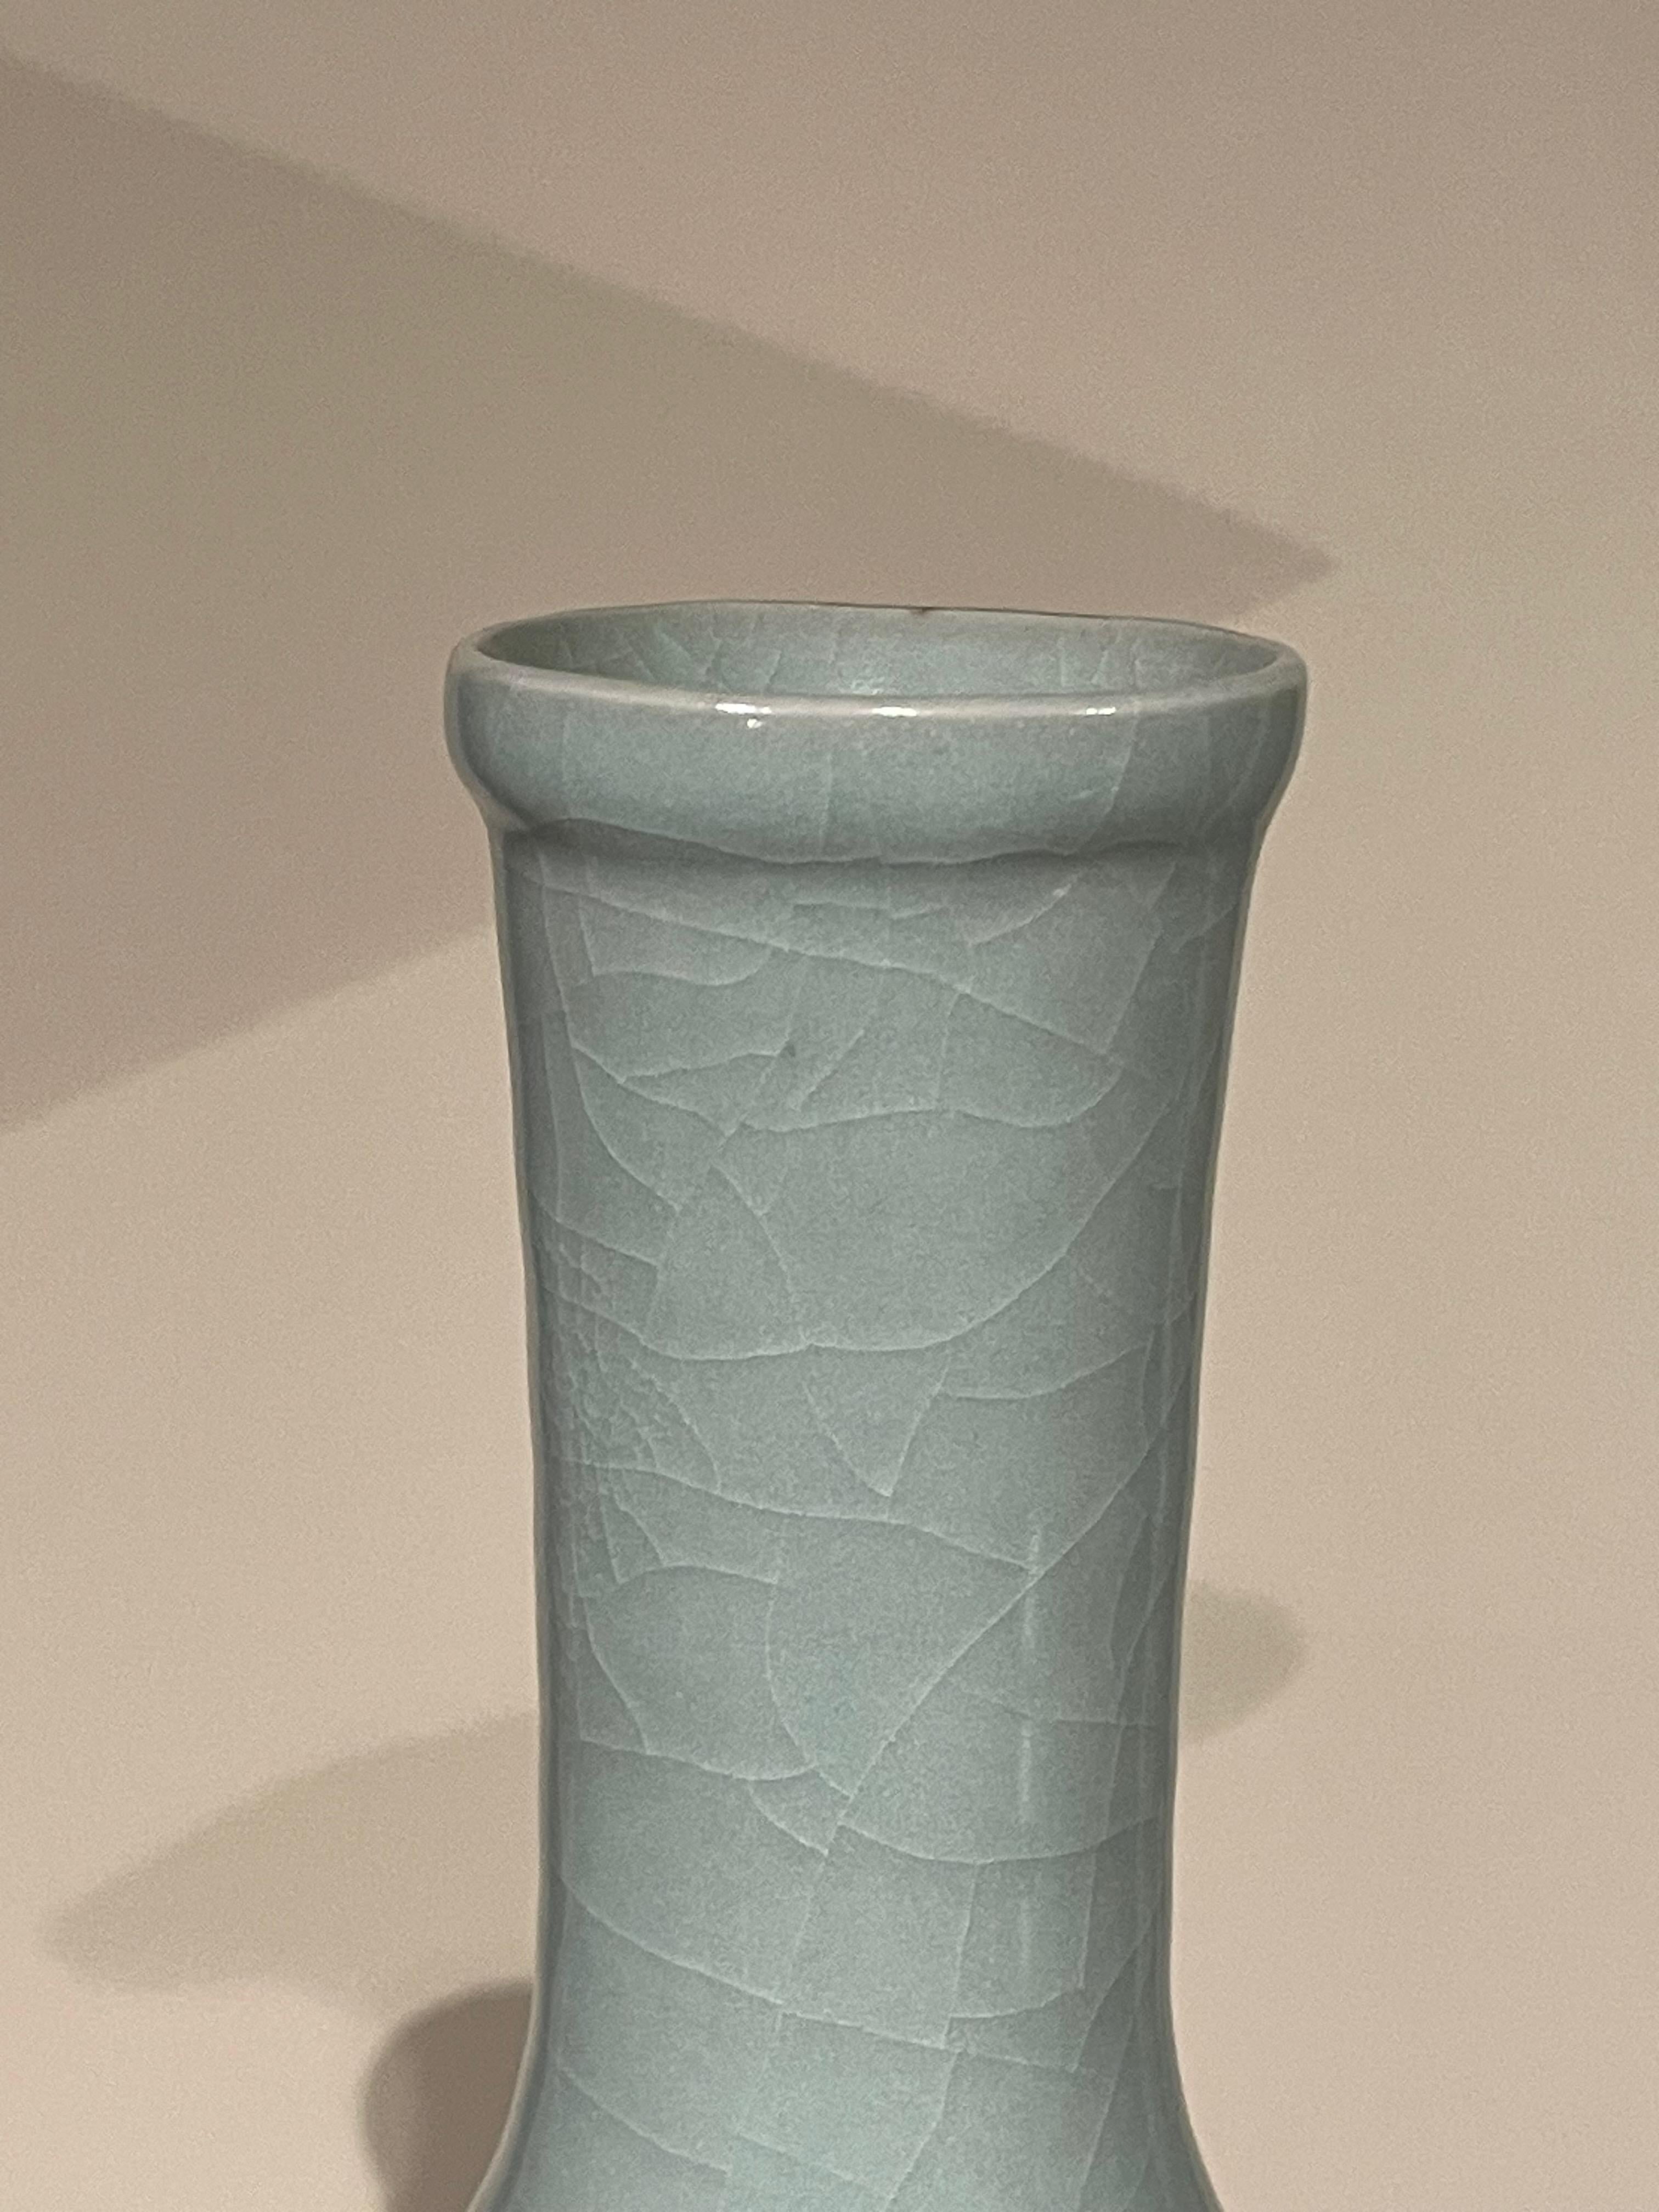 Vase contemporain chinois de couleur turquoise pâle.
Design/One.
Une large collection est disponible avec des tailles et des formes variées.
ARRIVÉE AVRIL